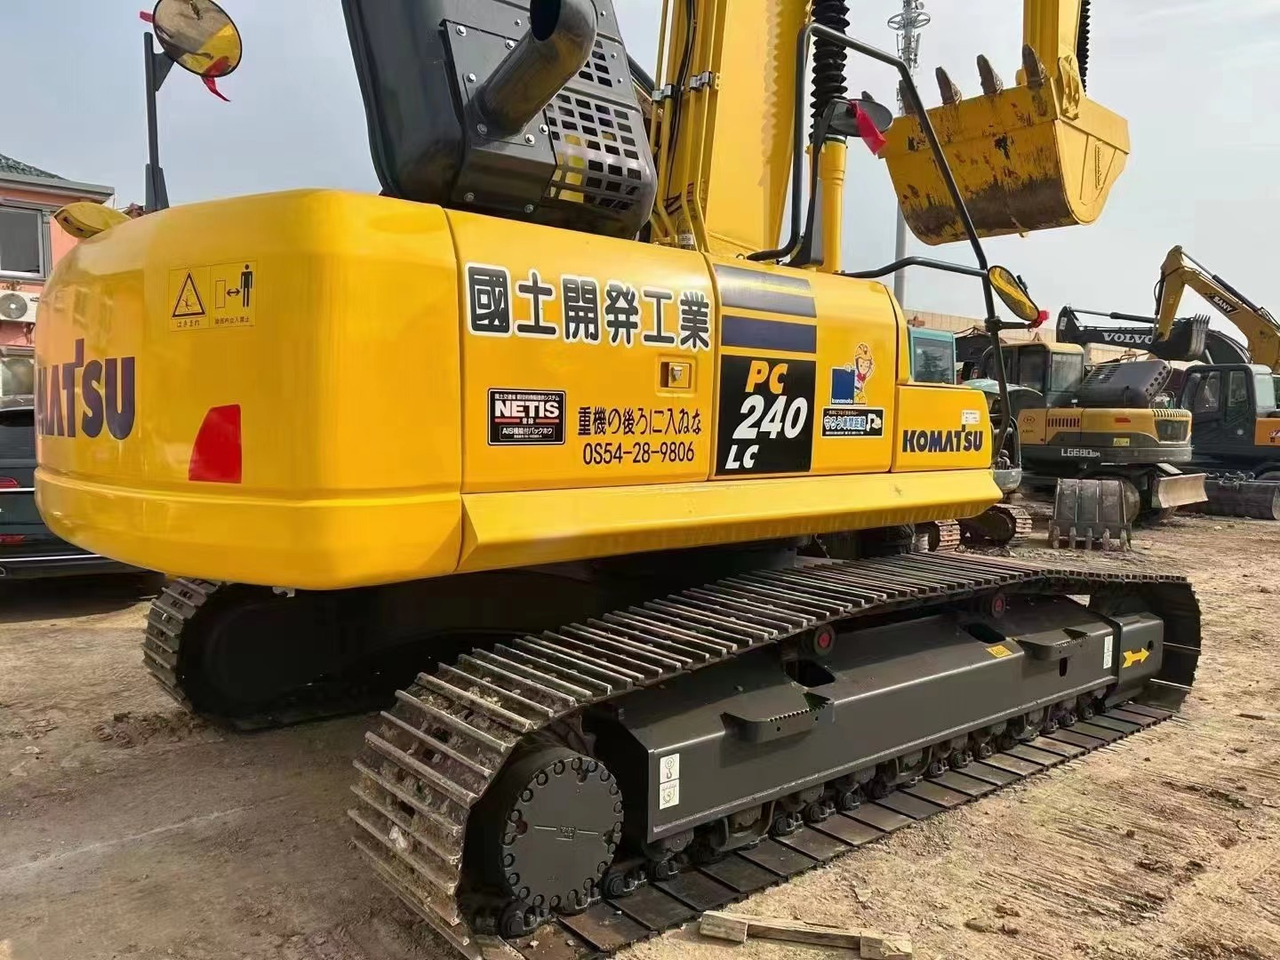 크롤러 굴삭기 95%new High quality 2022 Japan used excavator KOMATSU PC240LC-8models also on sale welcome to inquire : 사진 6